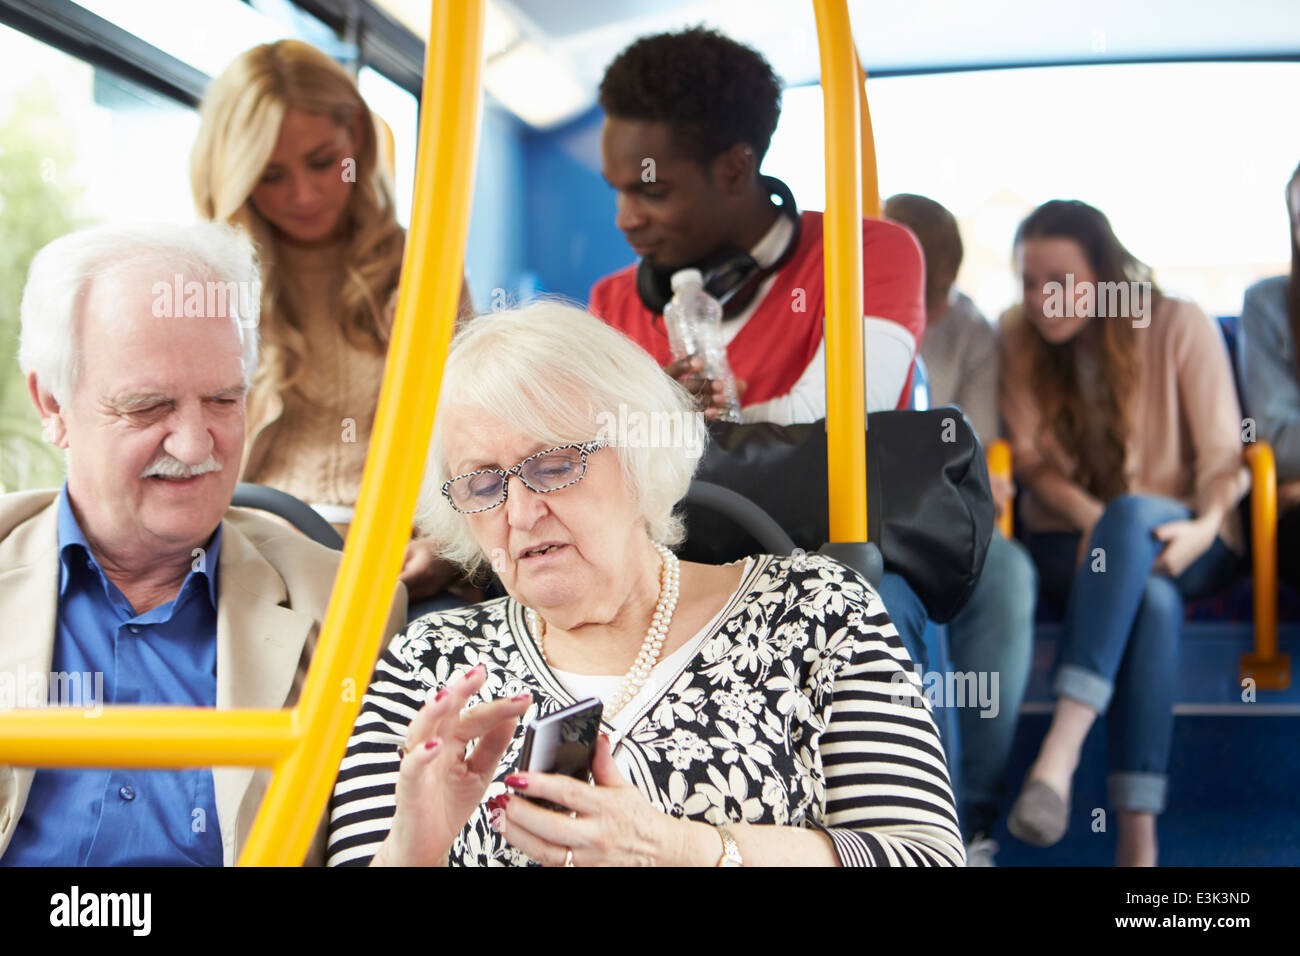 Interno di autobus con passeggeri Foto Stock